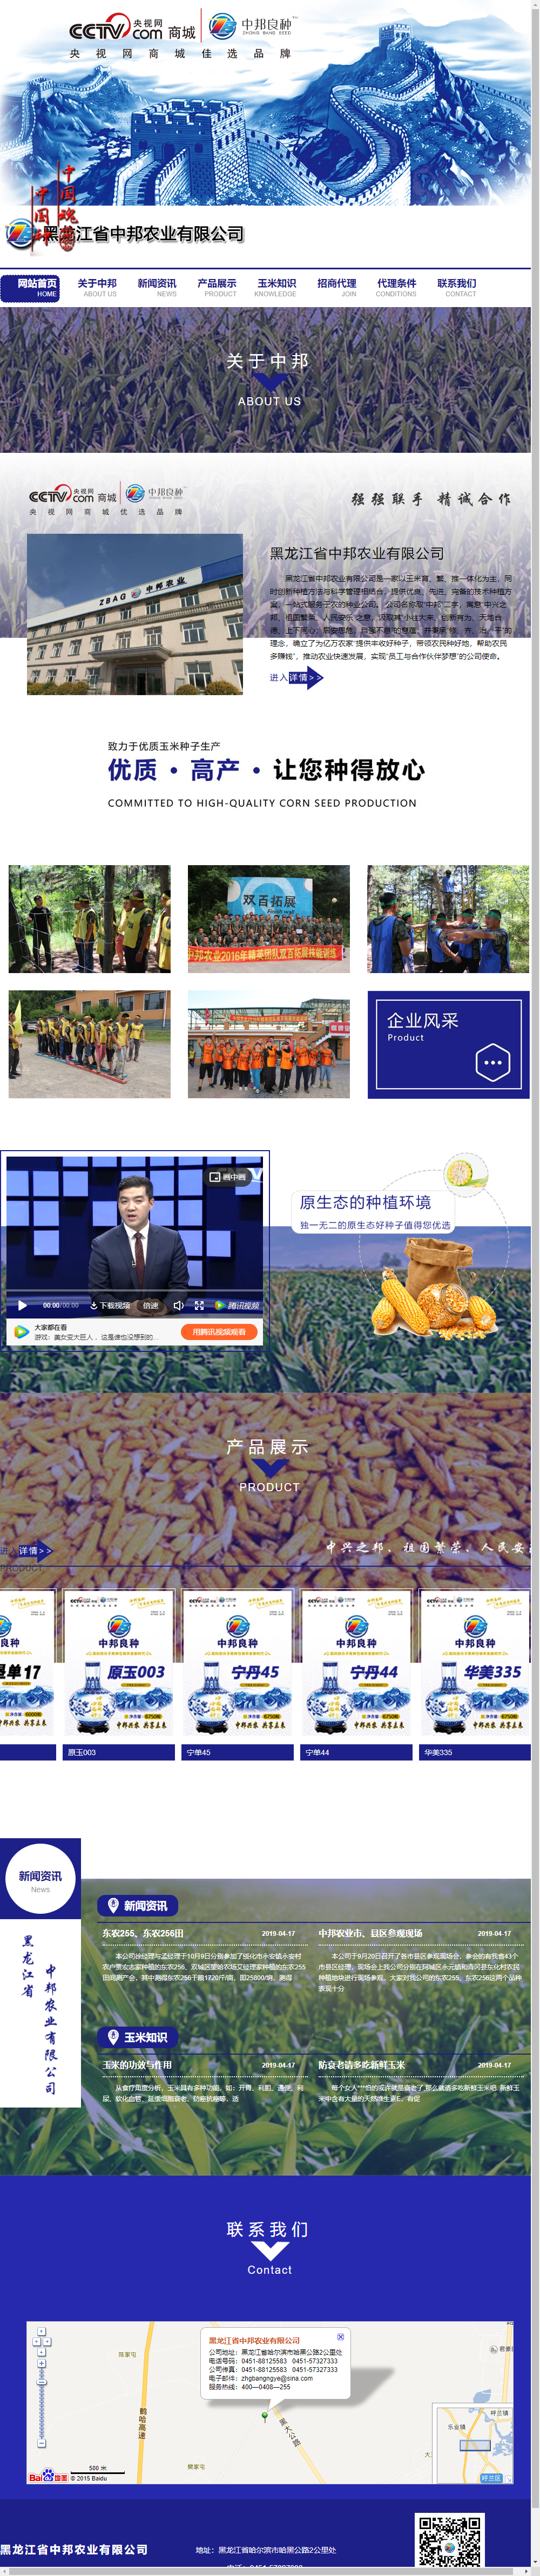 黑龙江省中邦农业有限公司网站案例